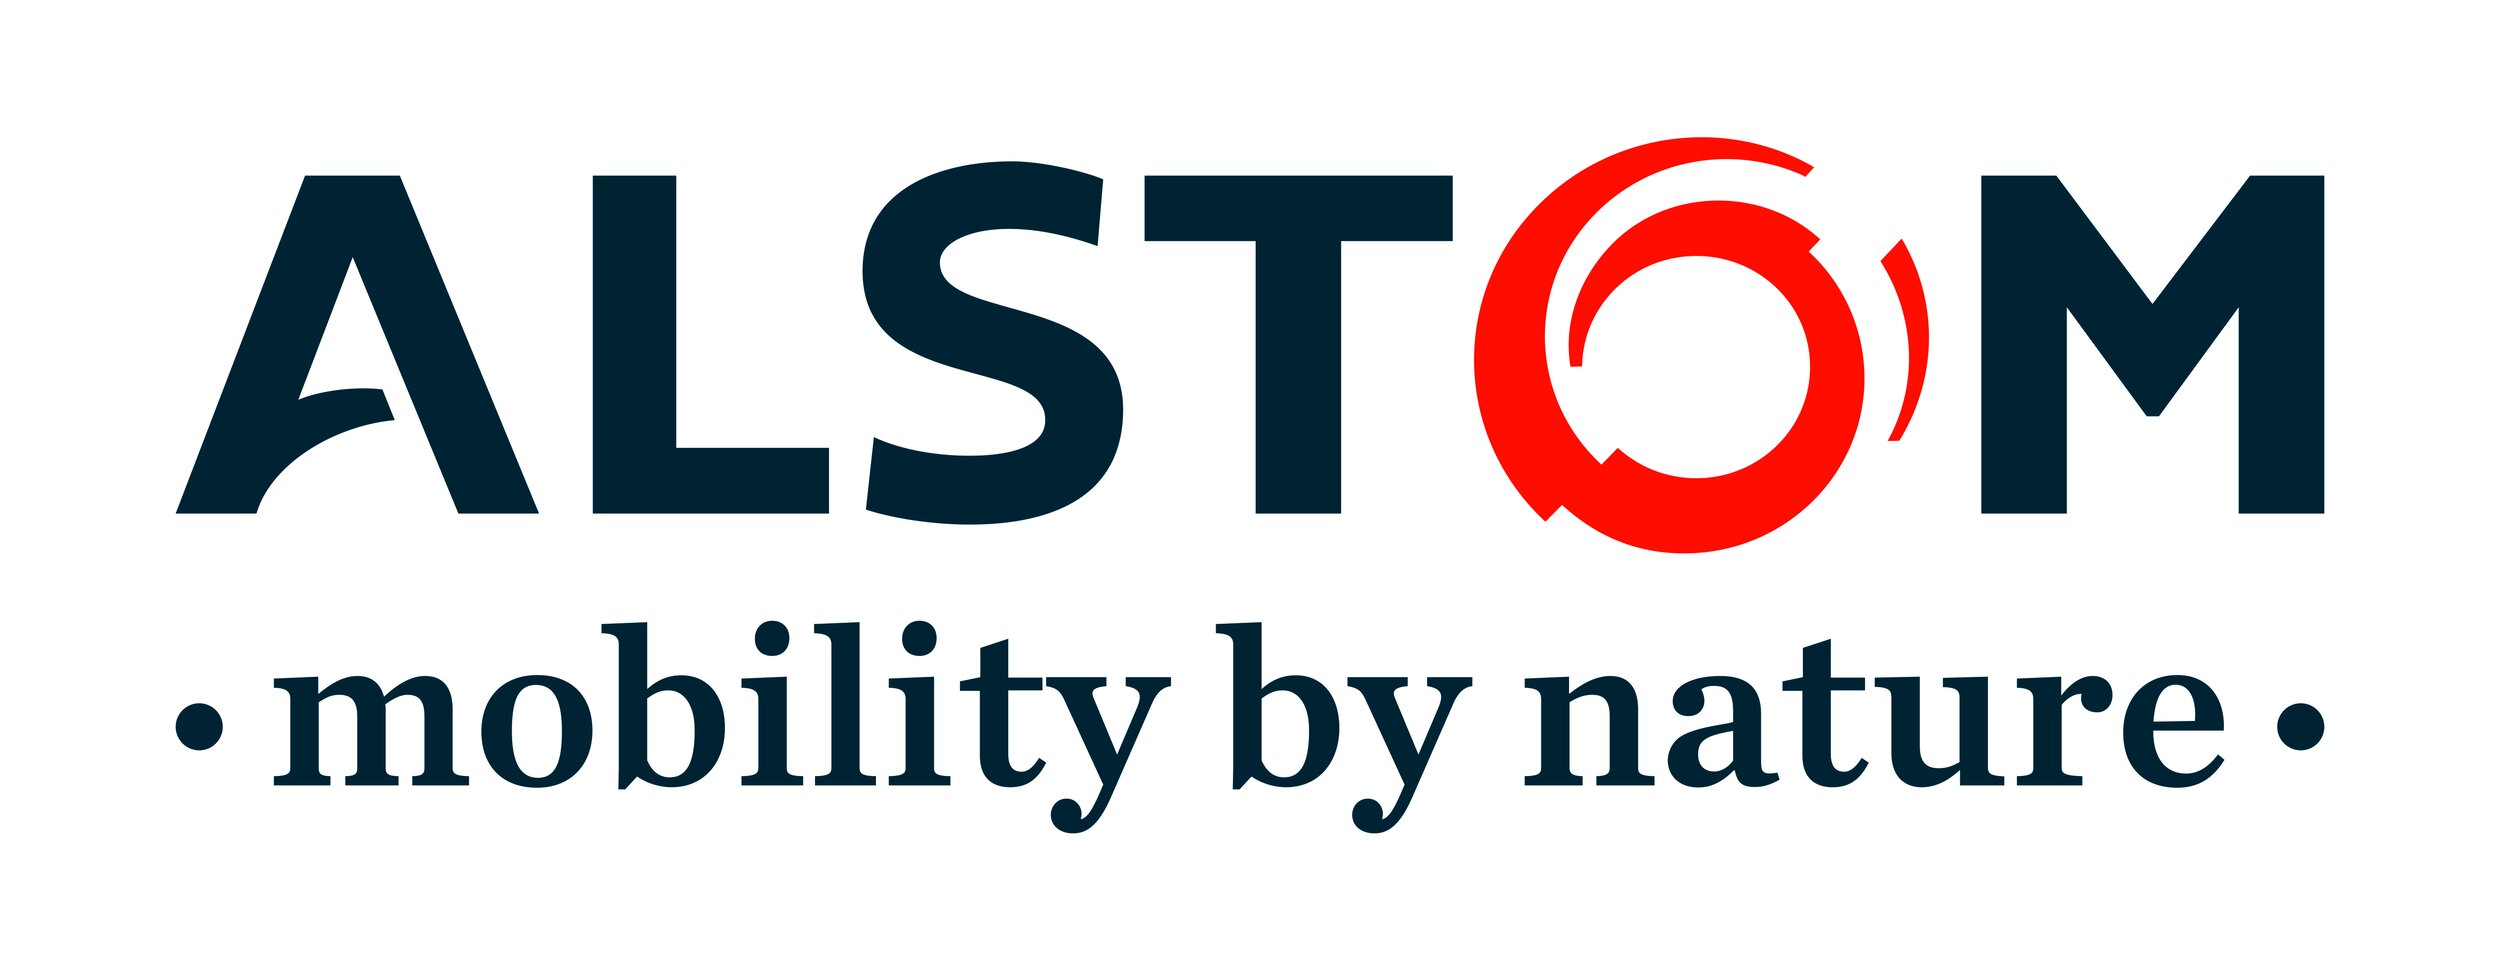 Alstom logo and signature colour hi res.jpg